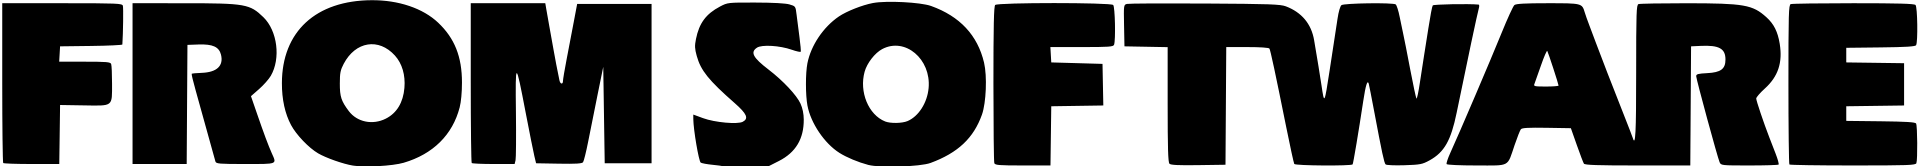 Logo da From Software